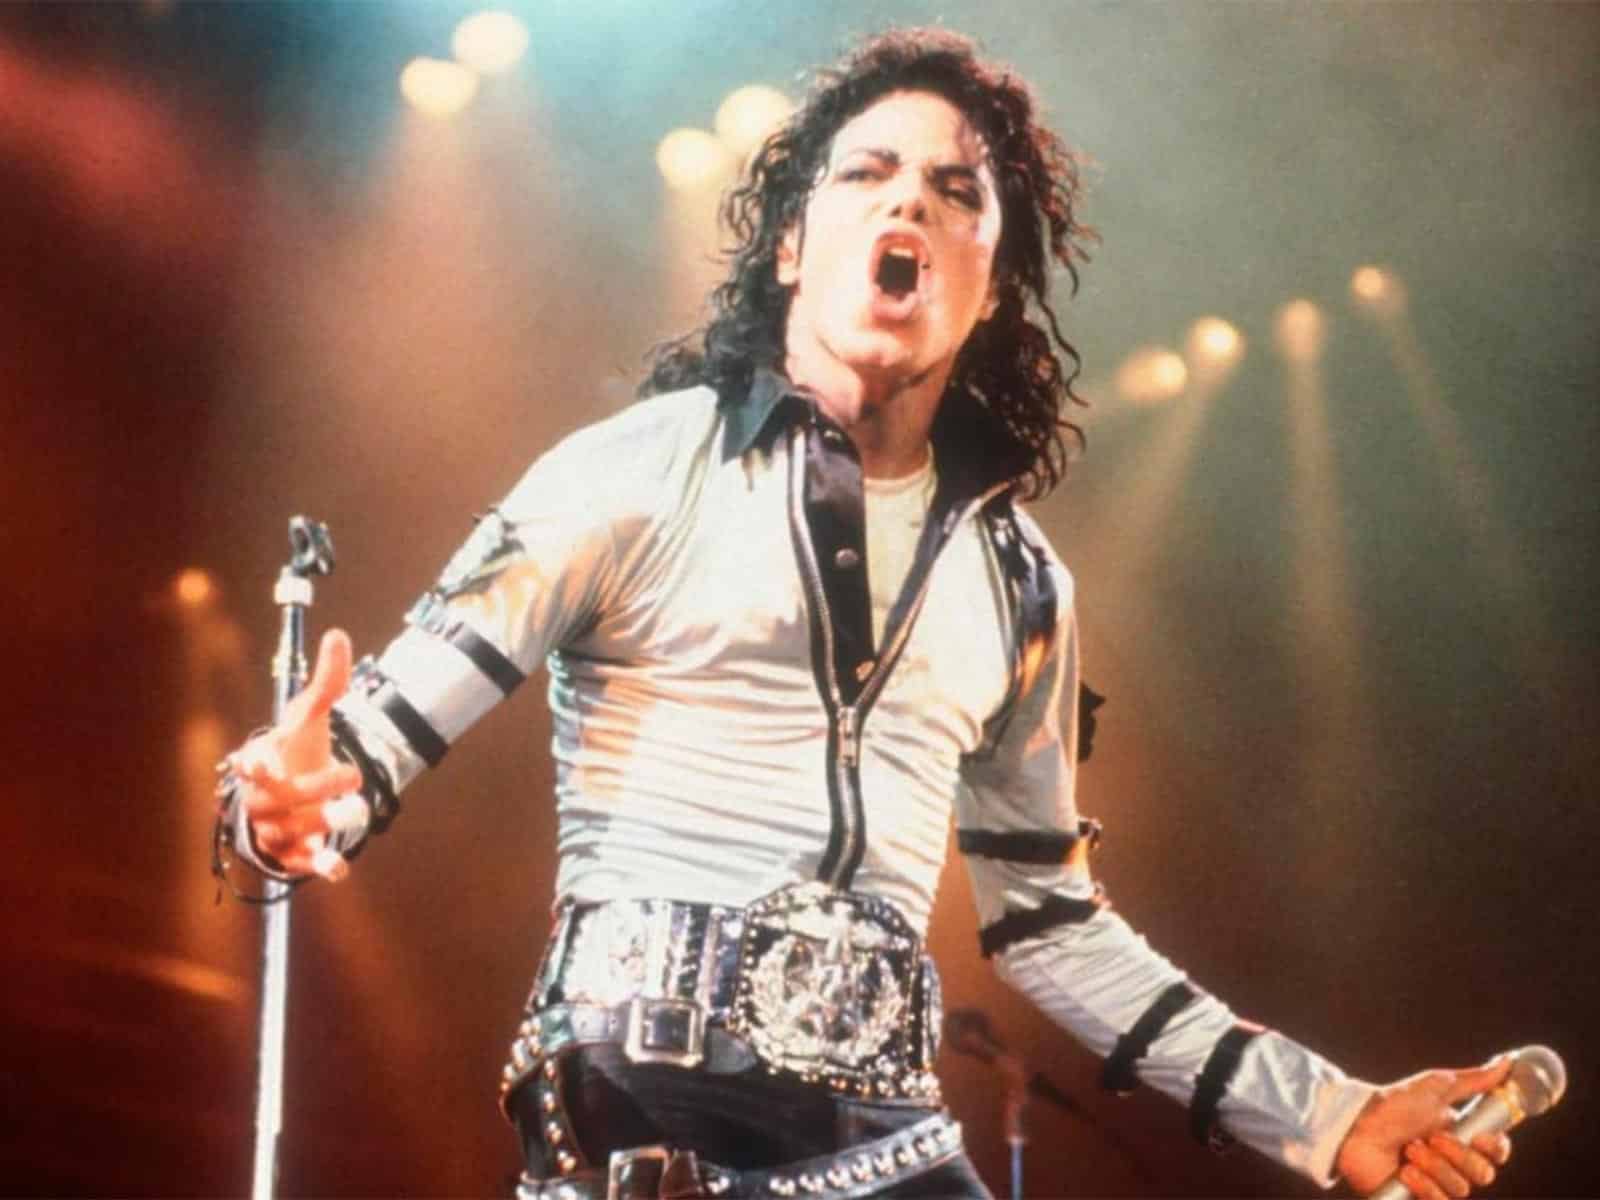 Retiran tres canciones de Michael Jackson por dudas sobre su autenticidad